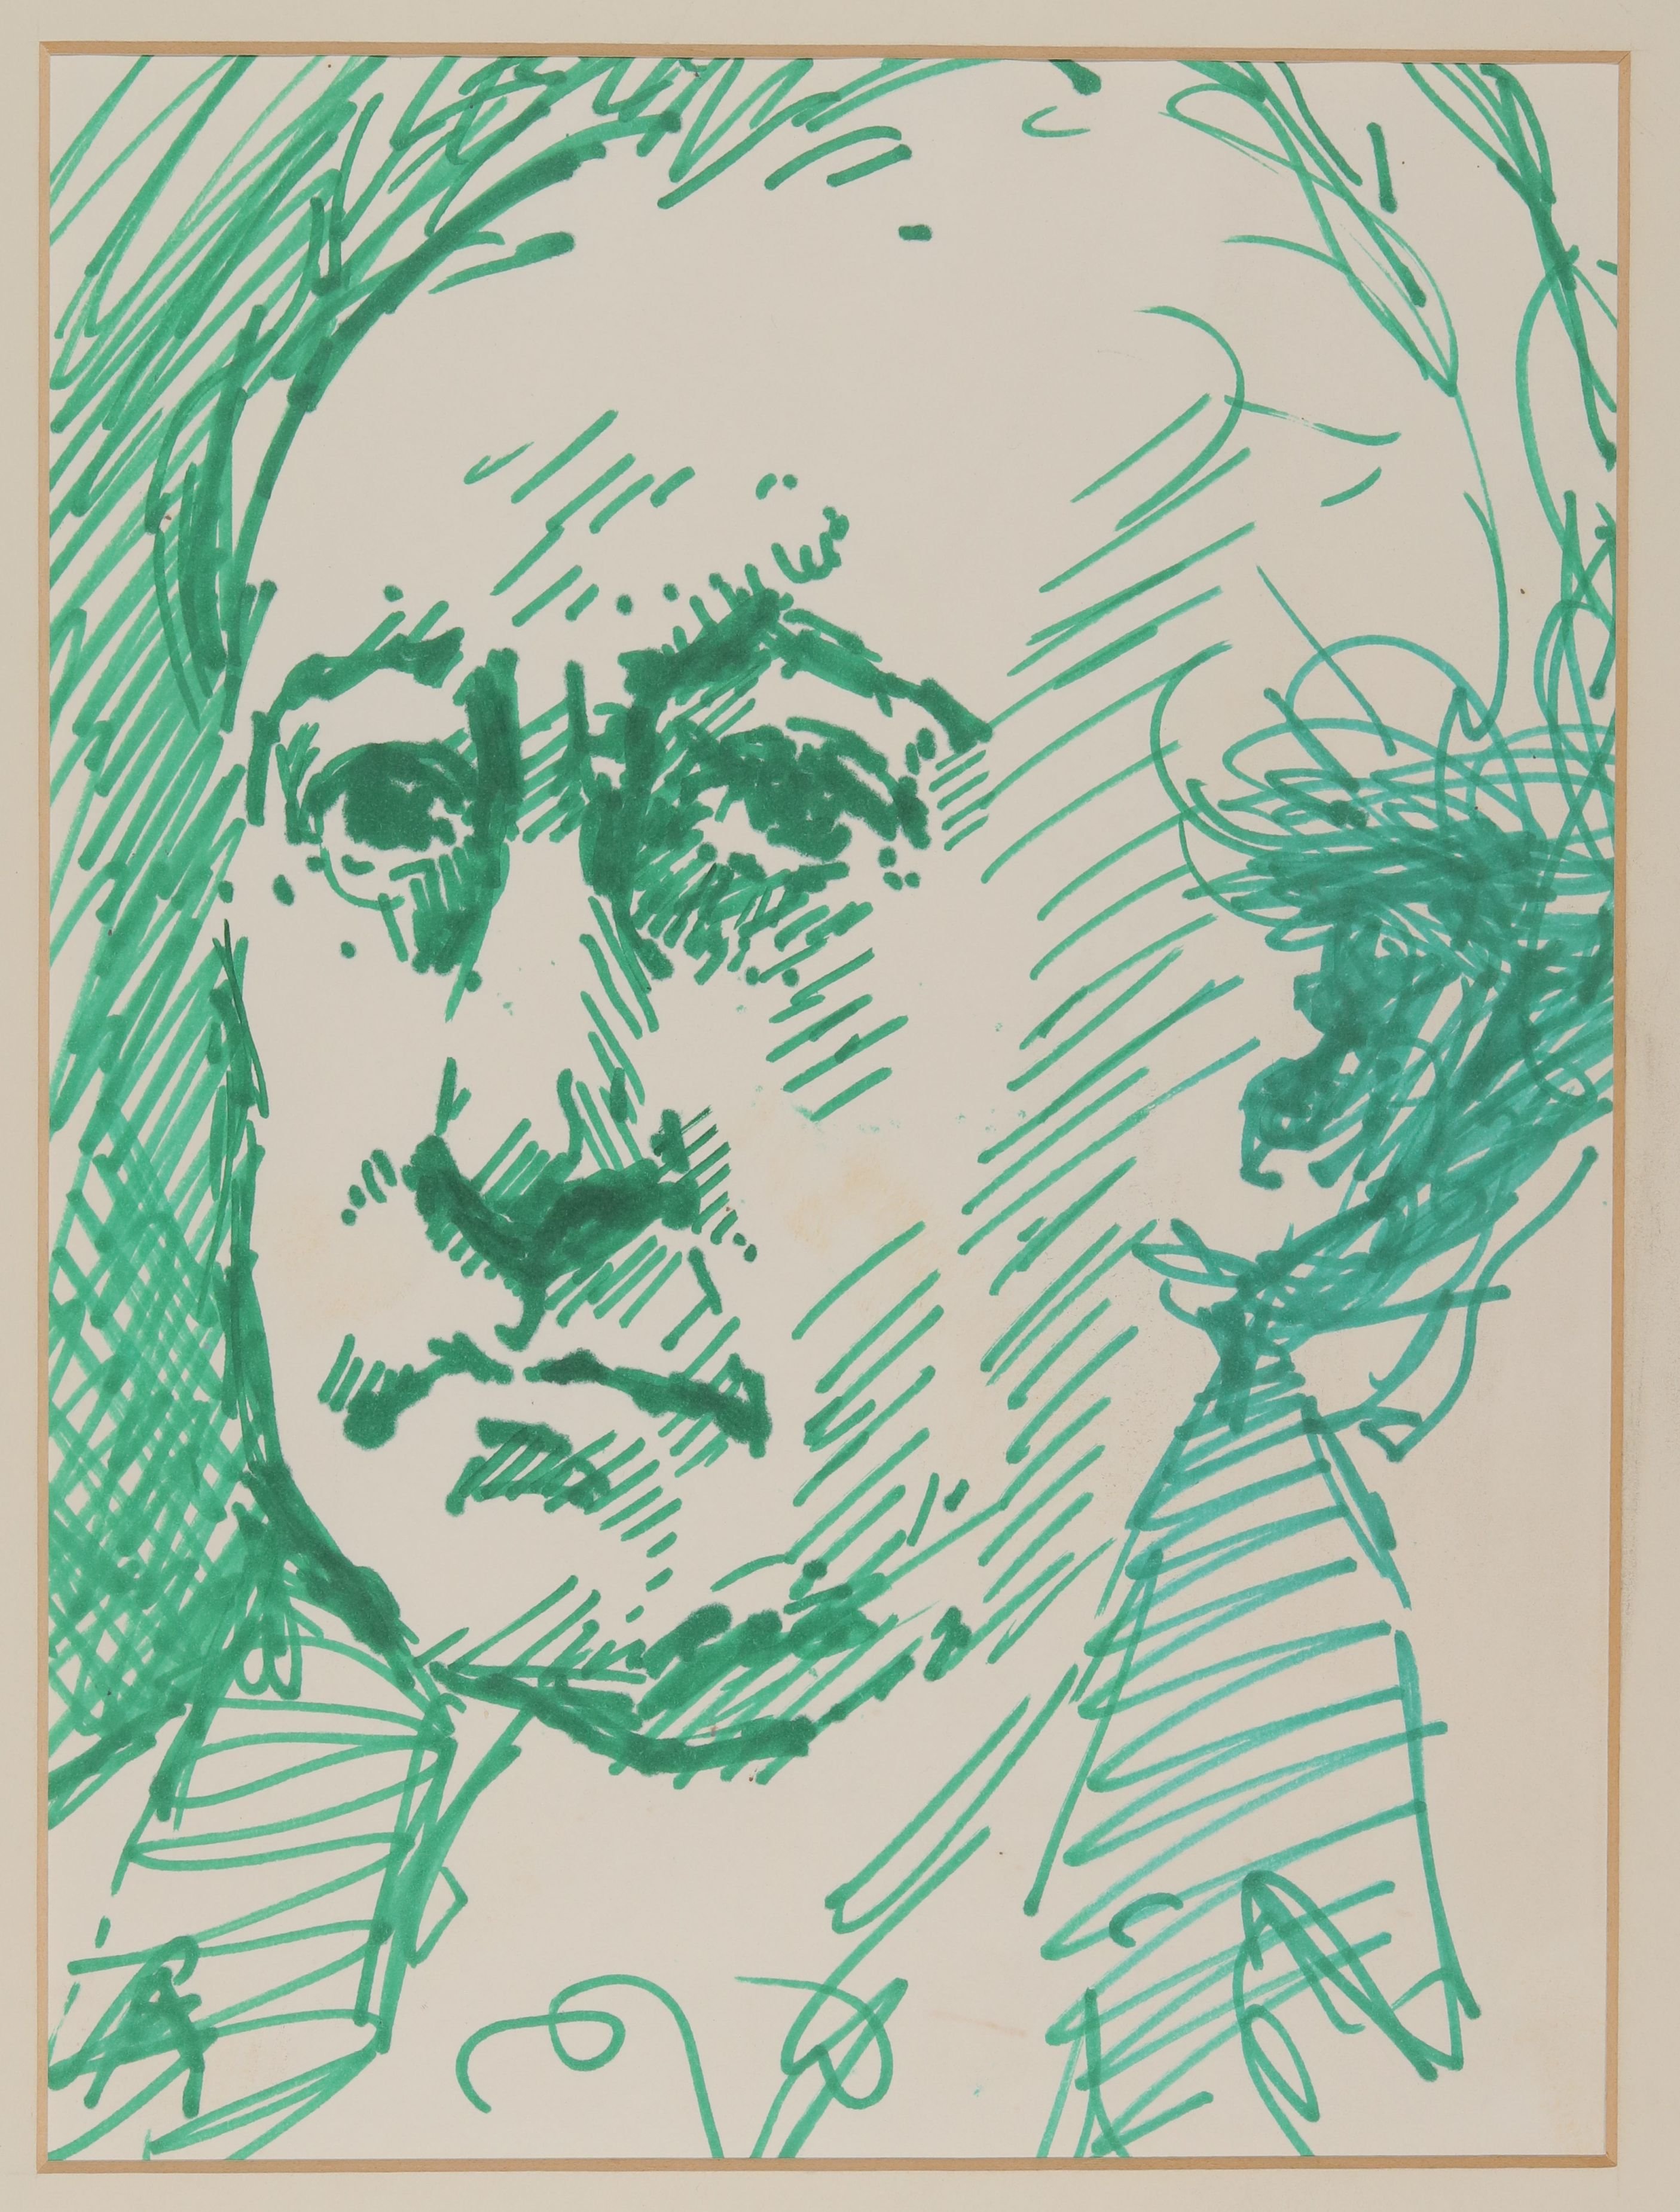 Johann Wolfgang von Goethe [(Studie zu einem Gemälde)] (Freies Deutsches Hochstift © Javier Cabada RR-F)